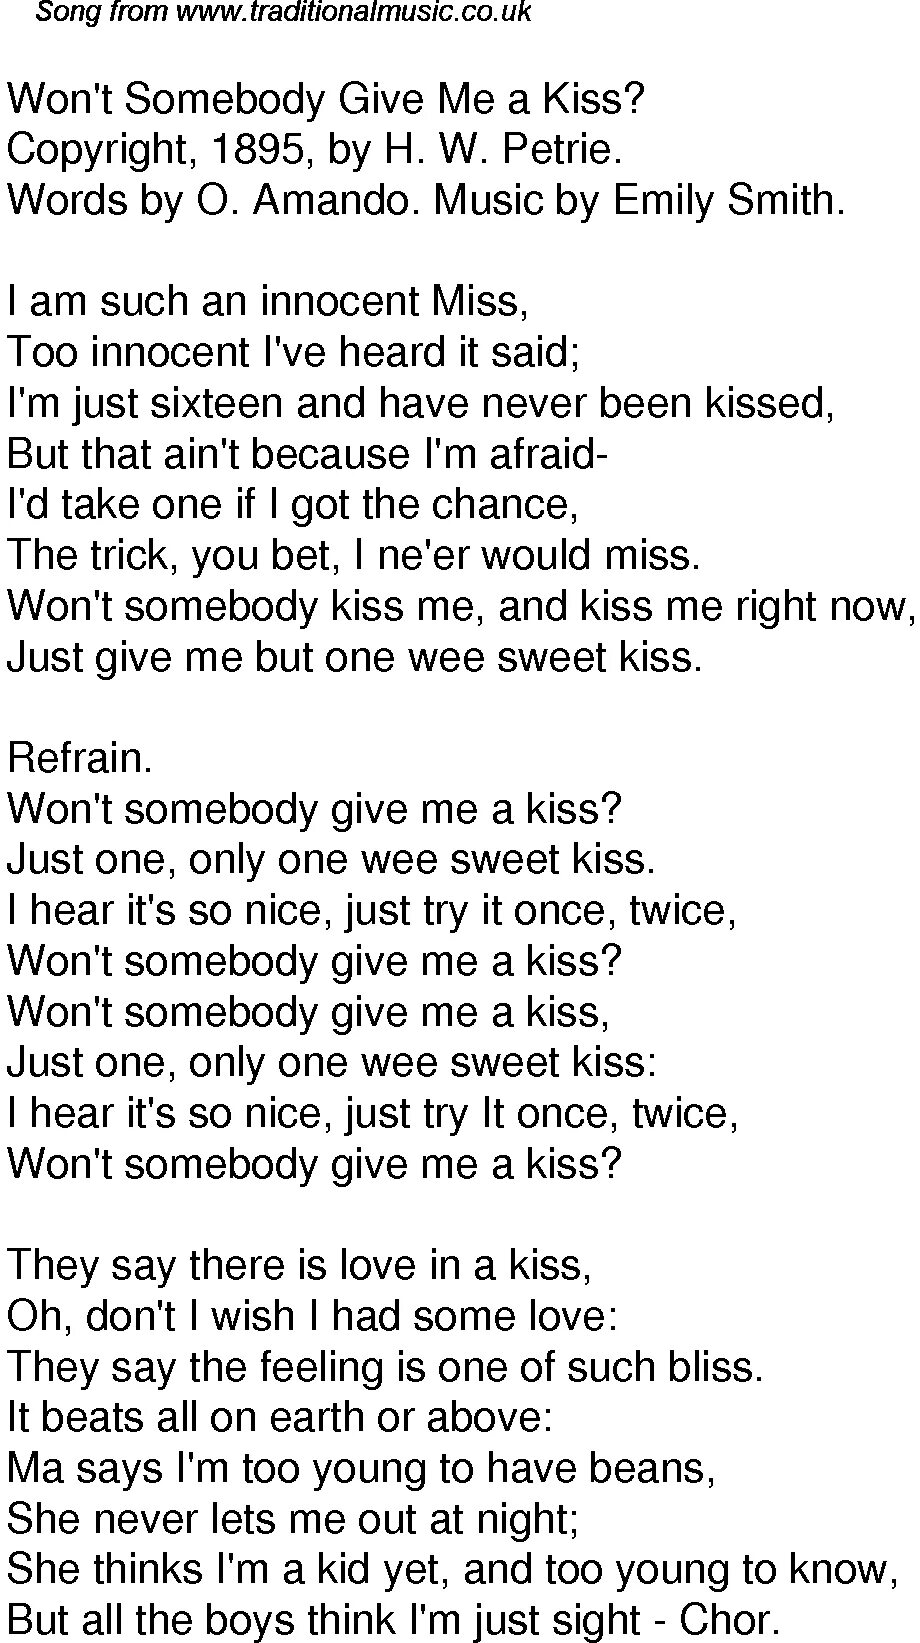 I Kissed a boy текст. Текст песни поцелуй. I Kissed a boy перевод. Песня Кисс ми.